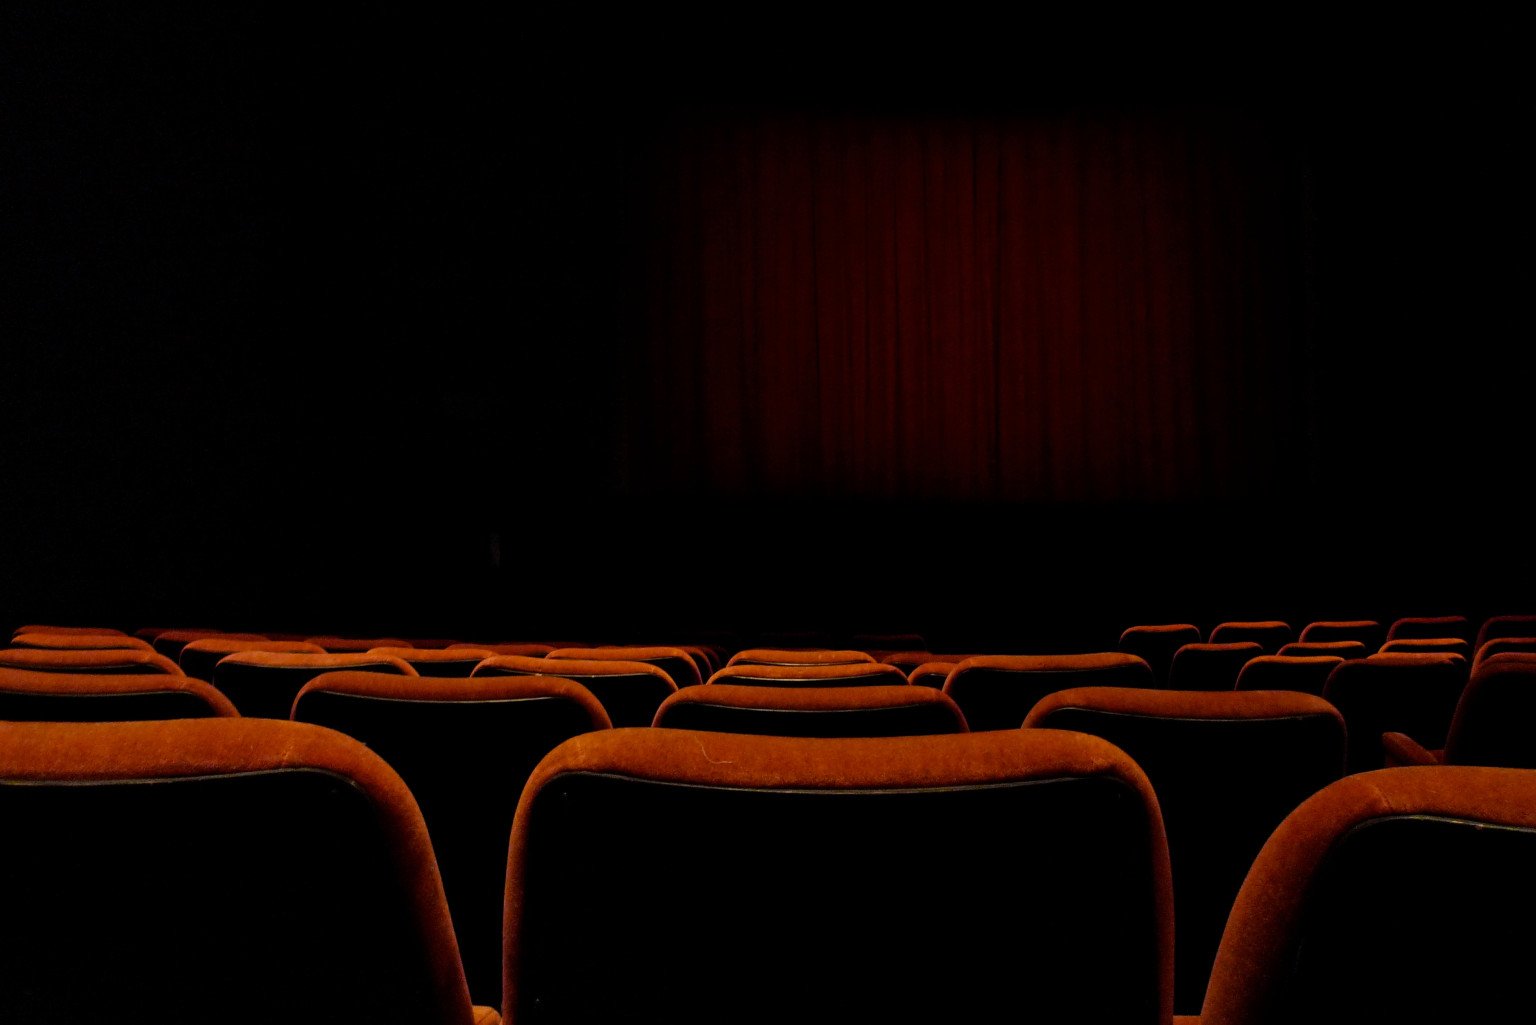 Theatre seats. Экран кинотеатра. Темный кинозал. Пустой зал кинотеатра. Темный кинотеатр.